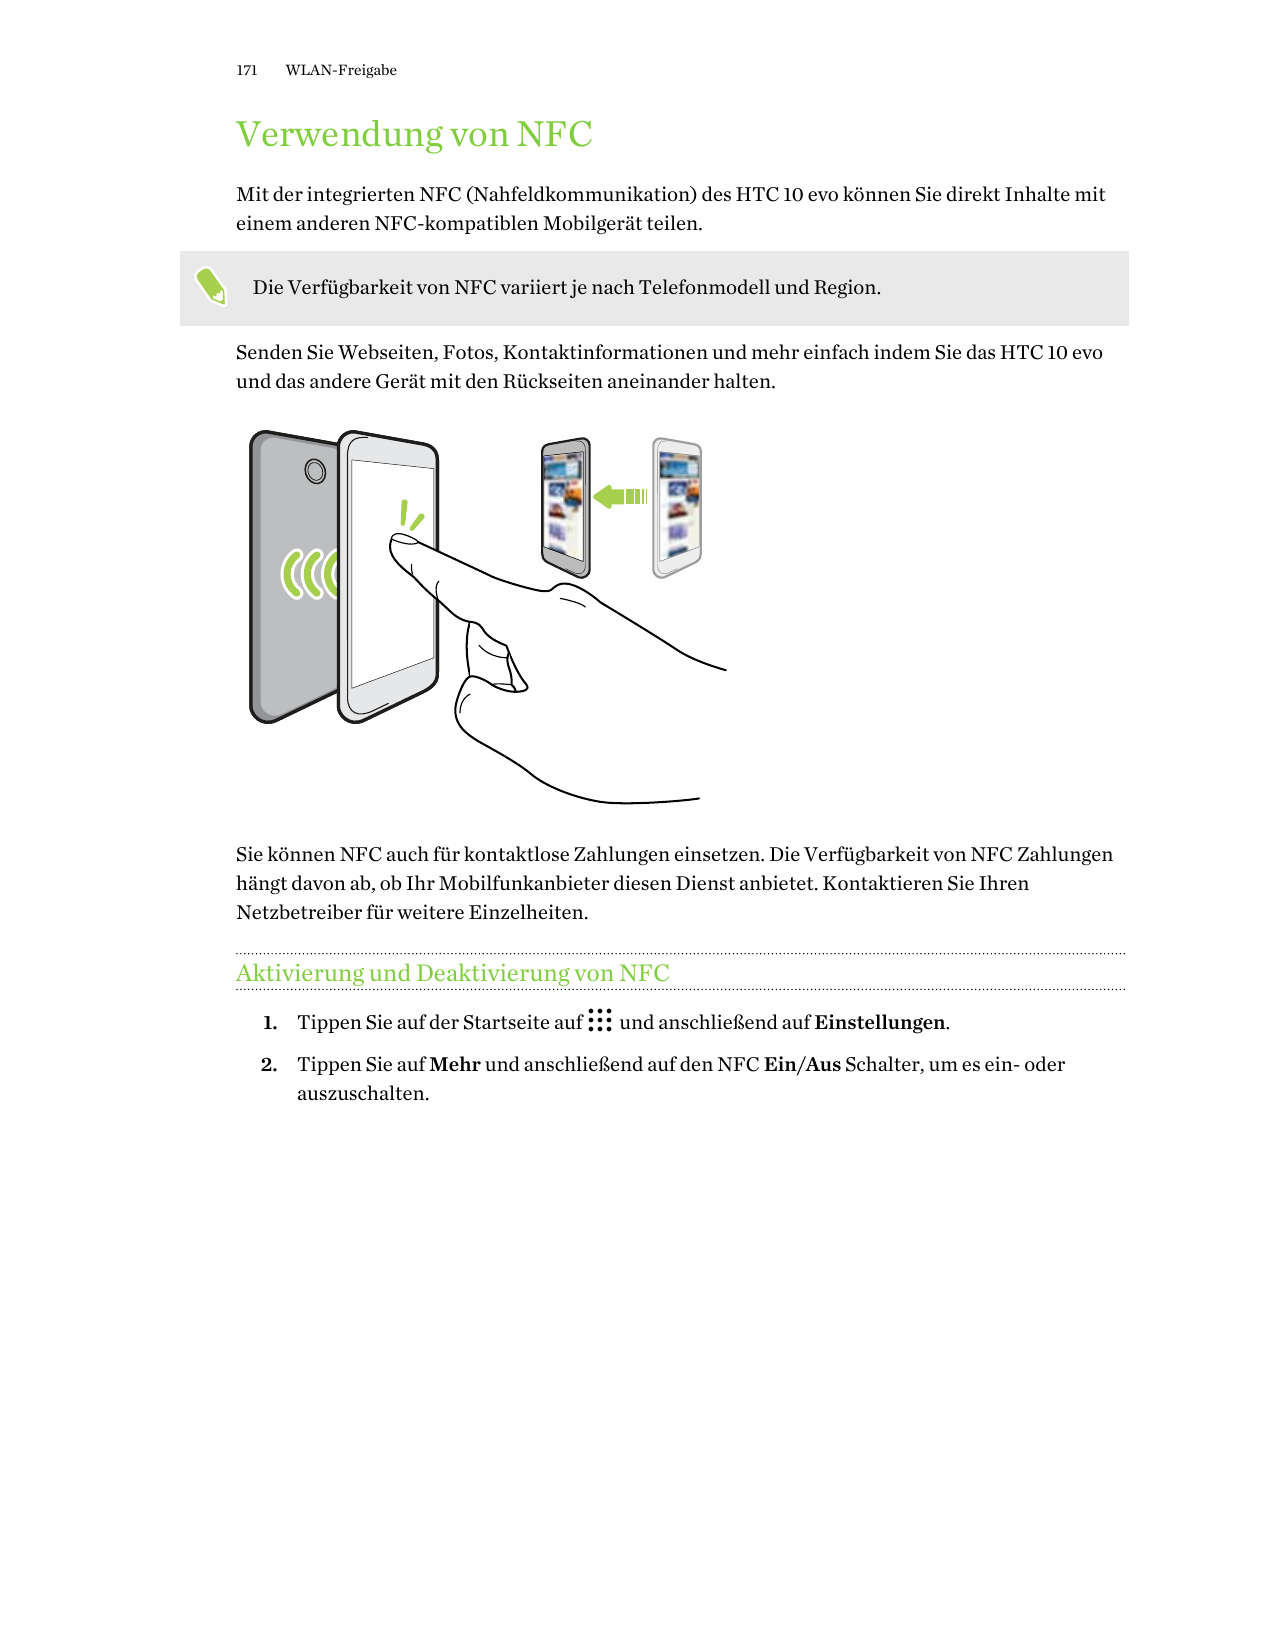 171WLAN-FreigabeVerwendung von NFCMit der integrierten NFC (Nahfeldkommunikation) des HTC 10 evo können Sie direkt Inhalte mitei